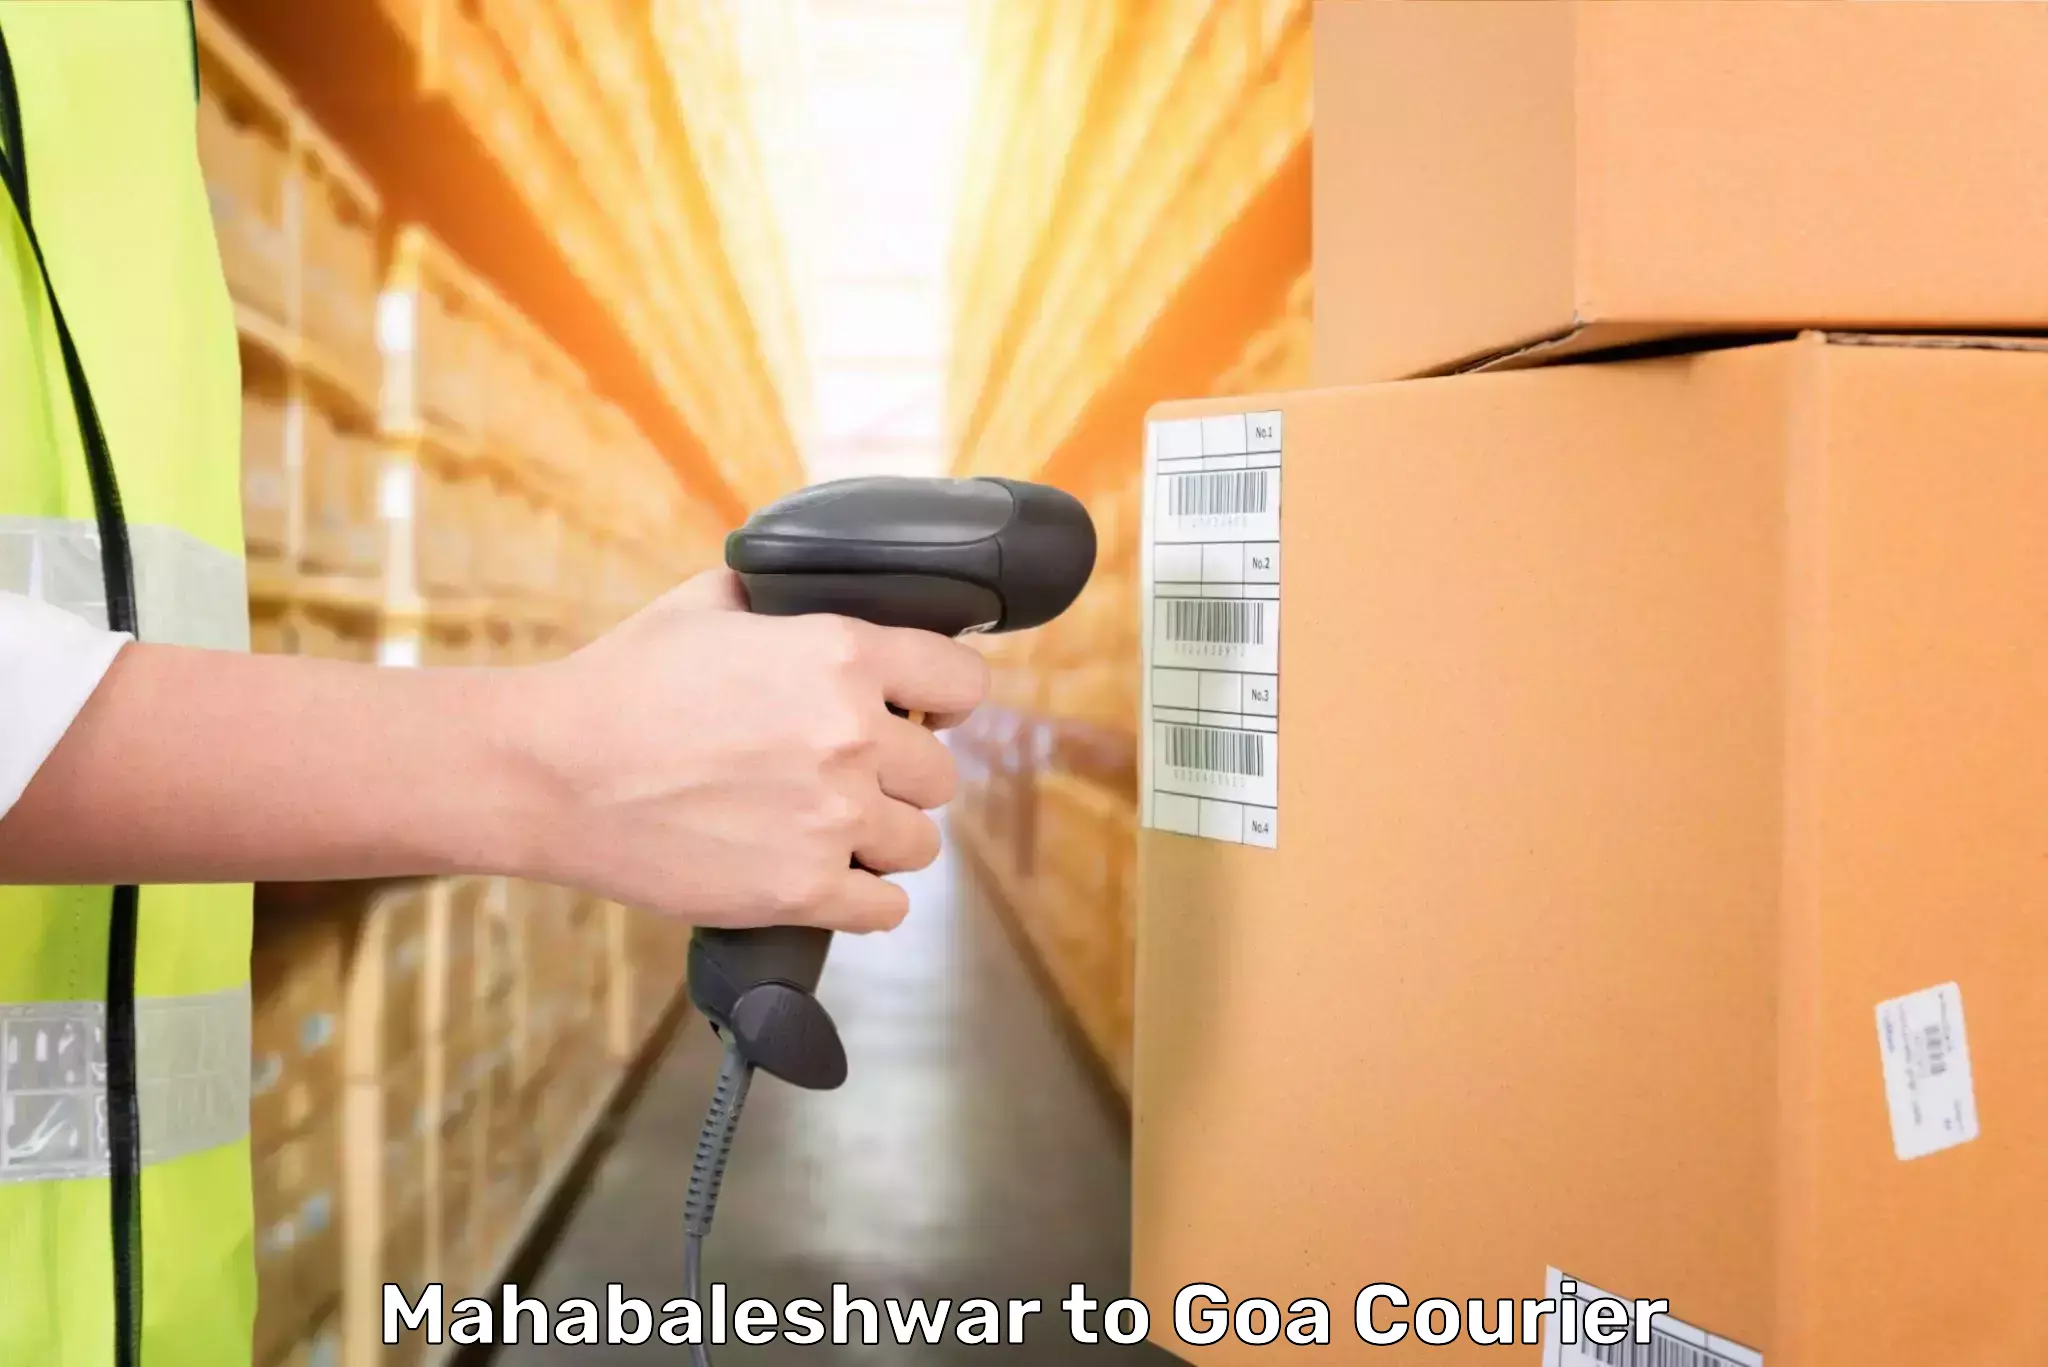 Baggage shipping experts Mahabaleshwar to Ponda